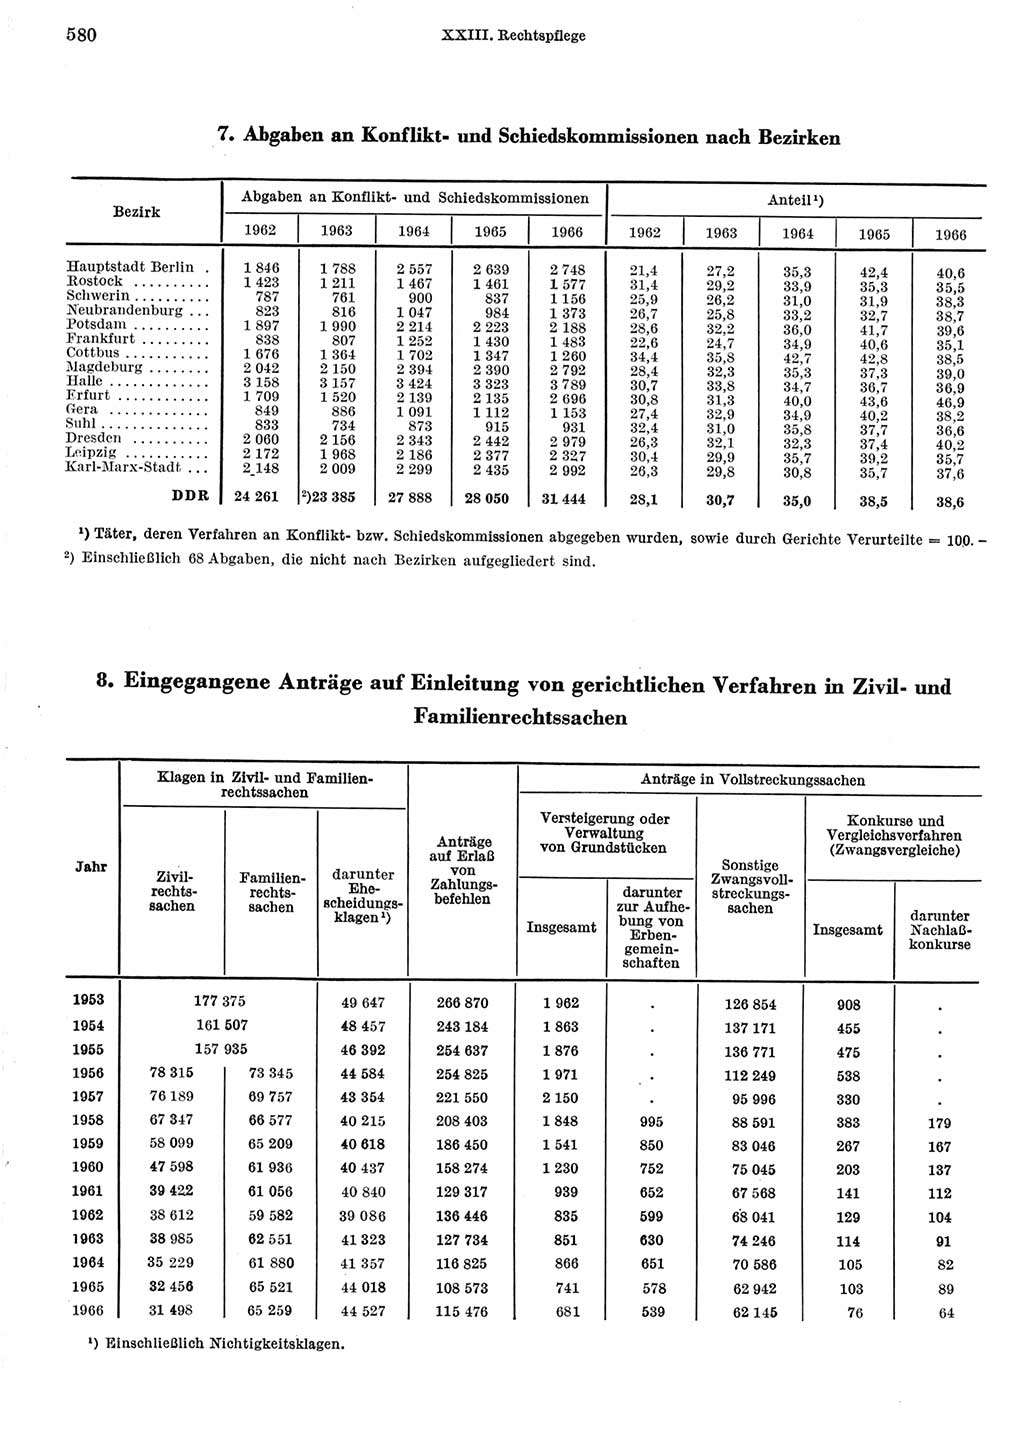 Statistisches Jahrbuch der Deutschen Demokratischen Republik (DDR) 1967, Seite 580 (Stat. Jb. DDR 1967, S. 580)